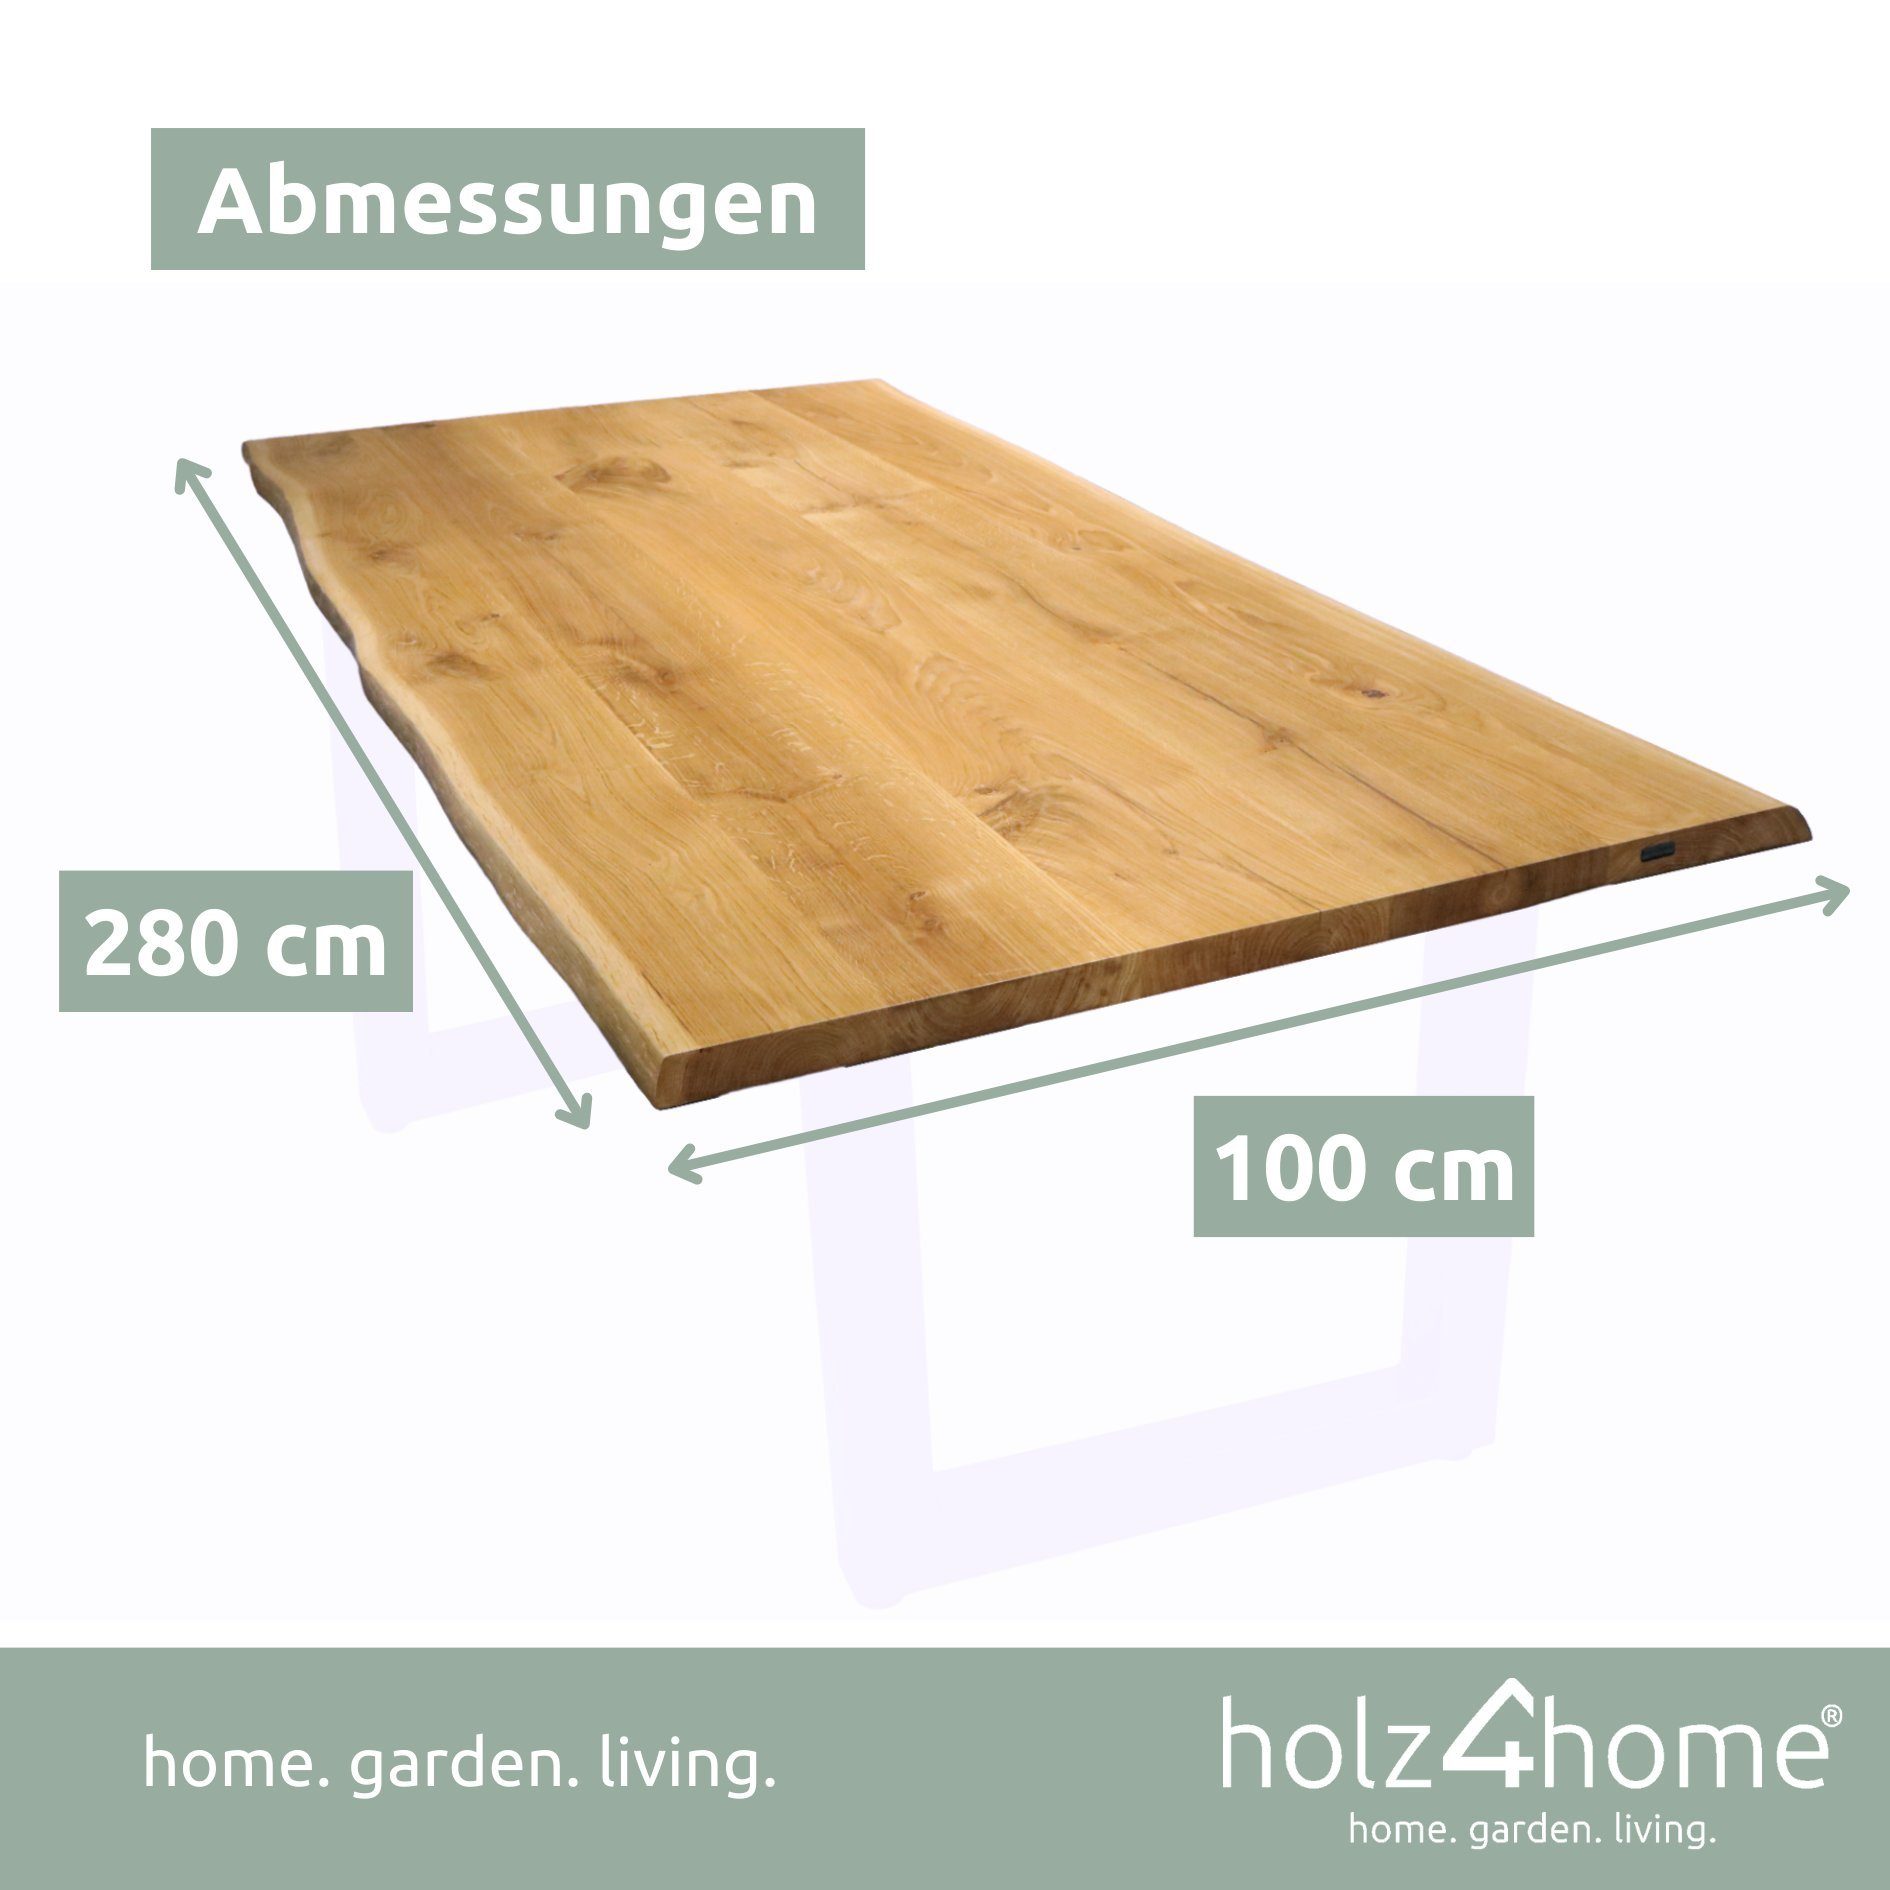 x 100cm aus 280cm massiver Esstischplatte mit Eiche Tischplatte holz4home Baumkante